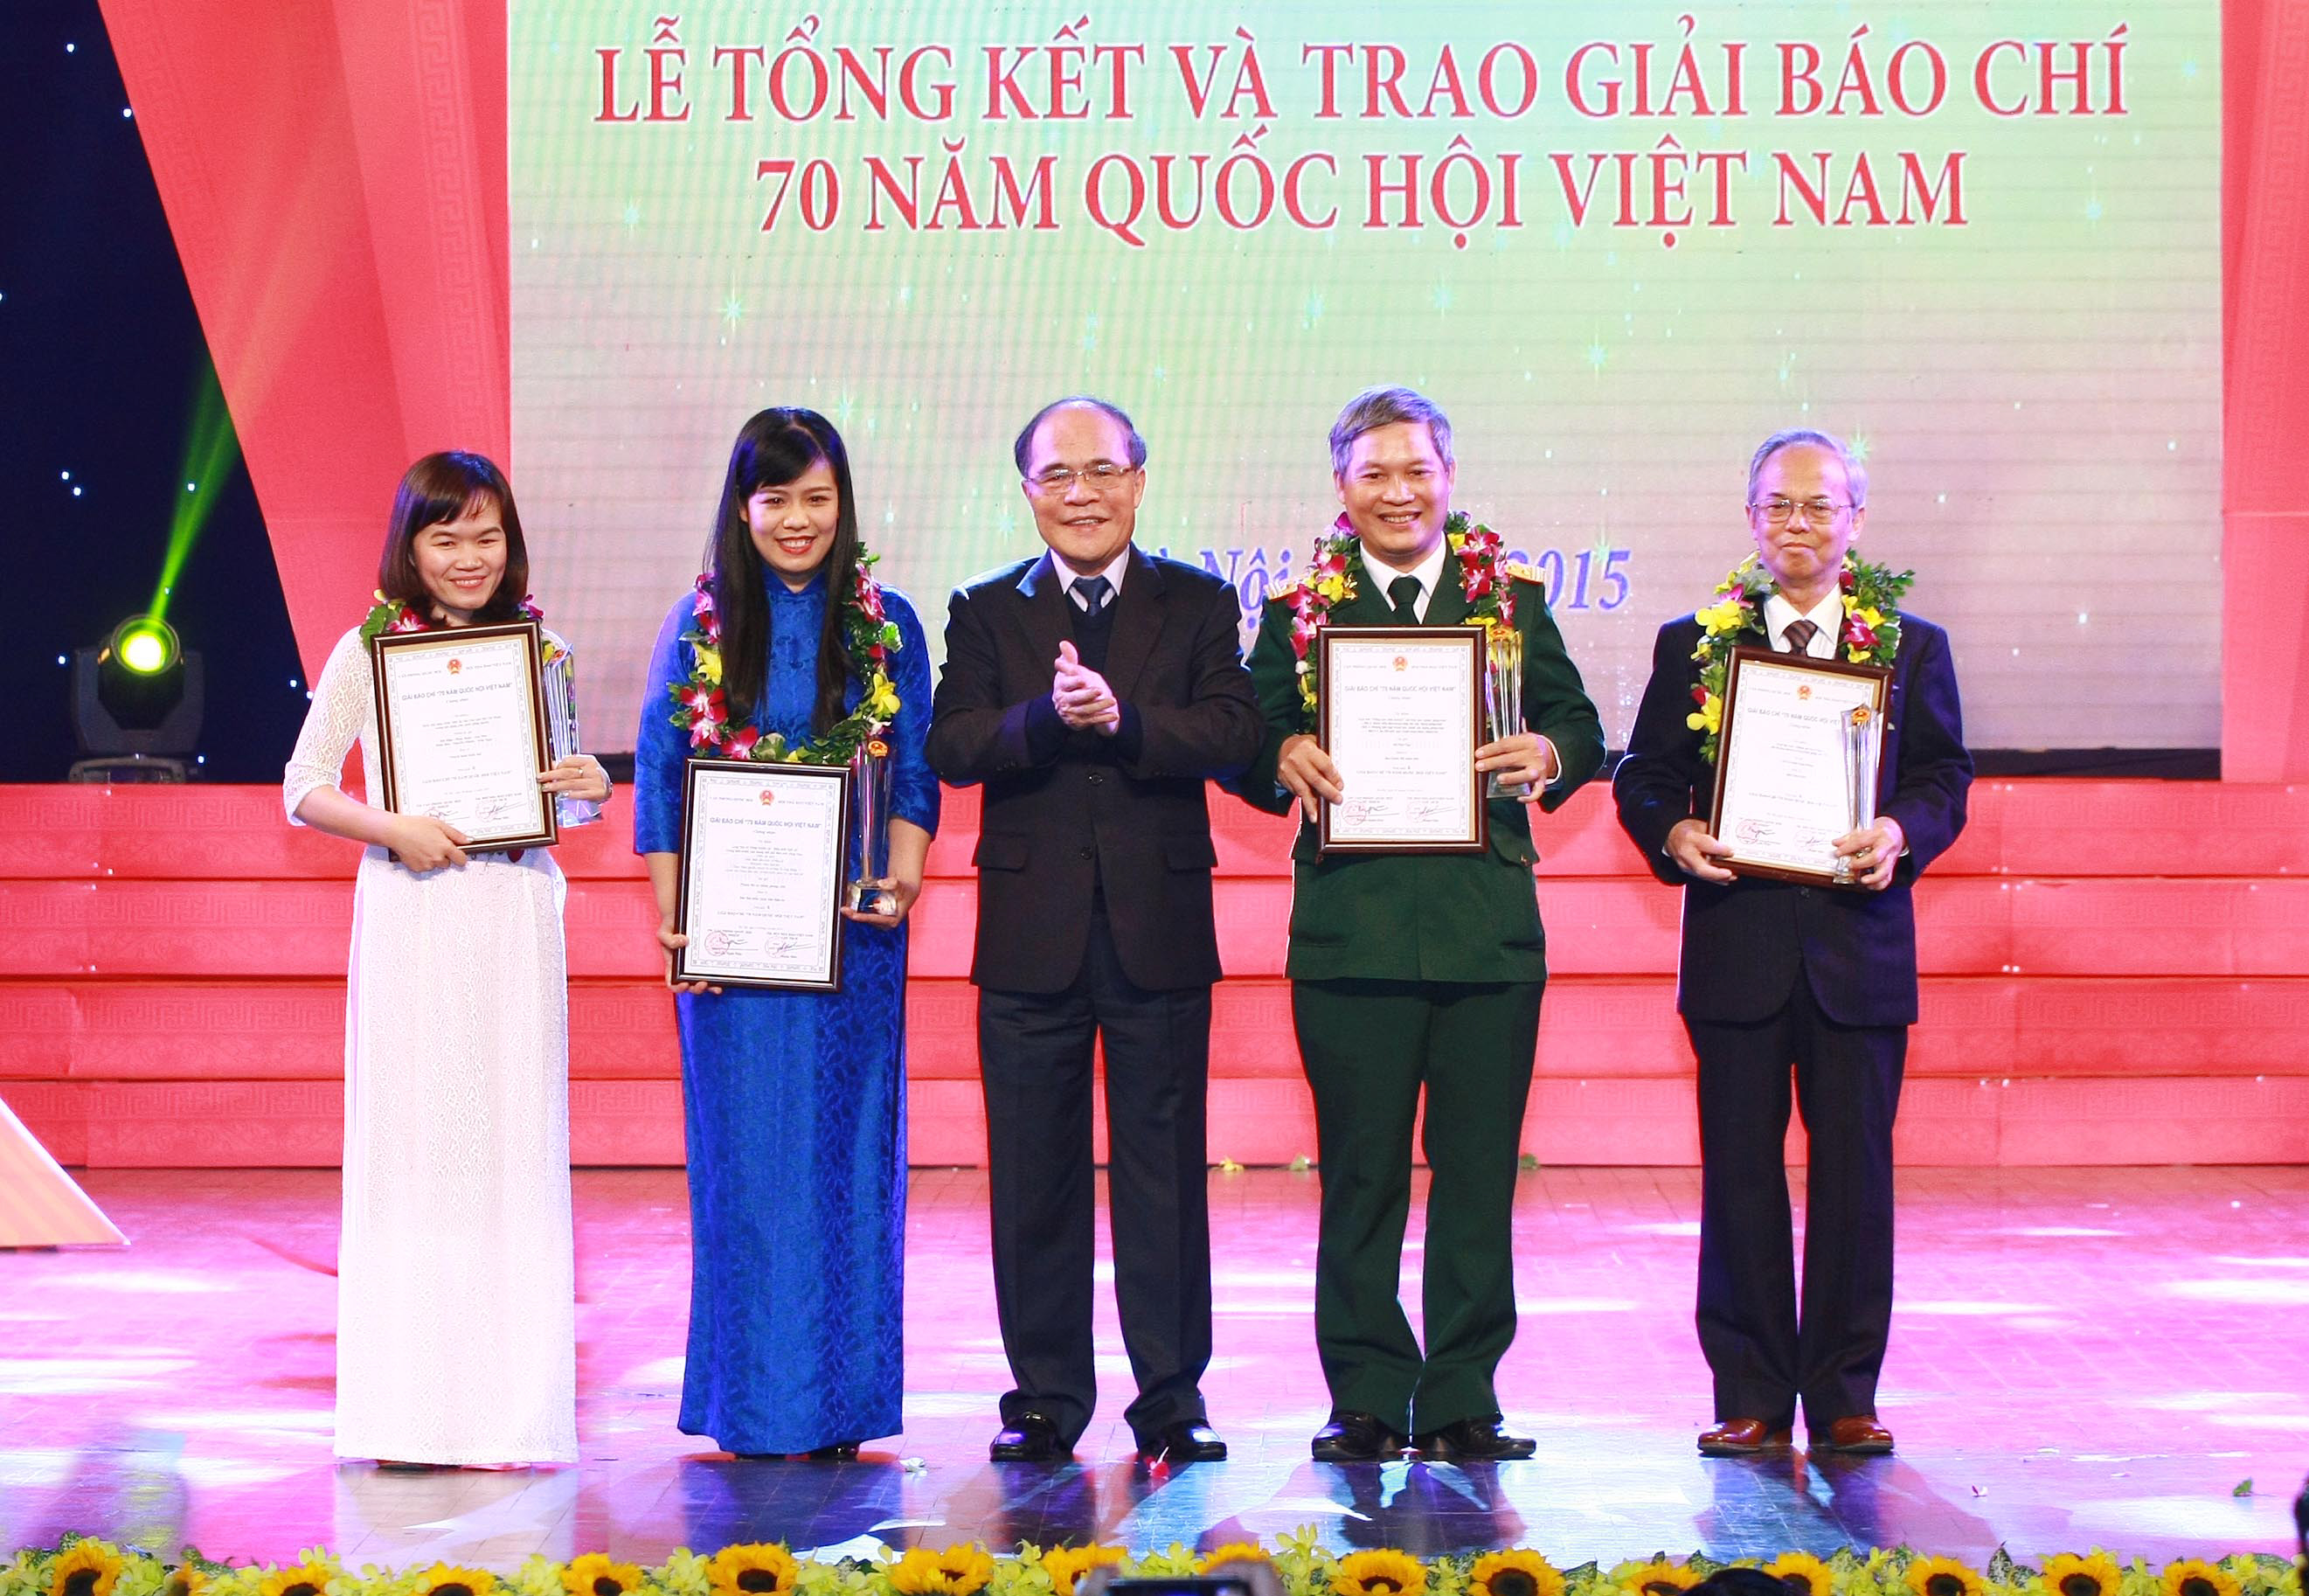 Chủ tịch Quốc hội Nguyễn Sinh Hùng trao giải cho các tác giả đoạt giải A Ảnh: Doãn Tấn